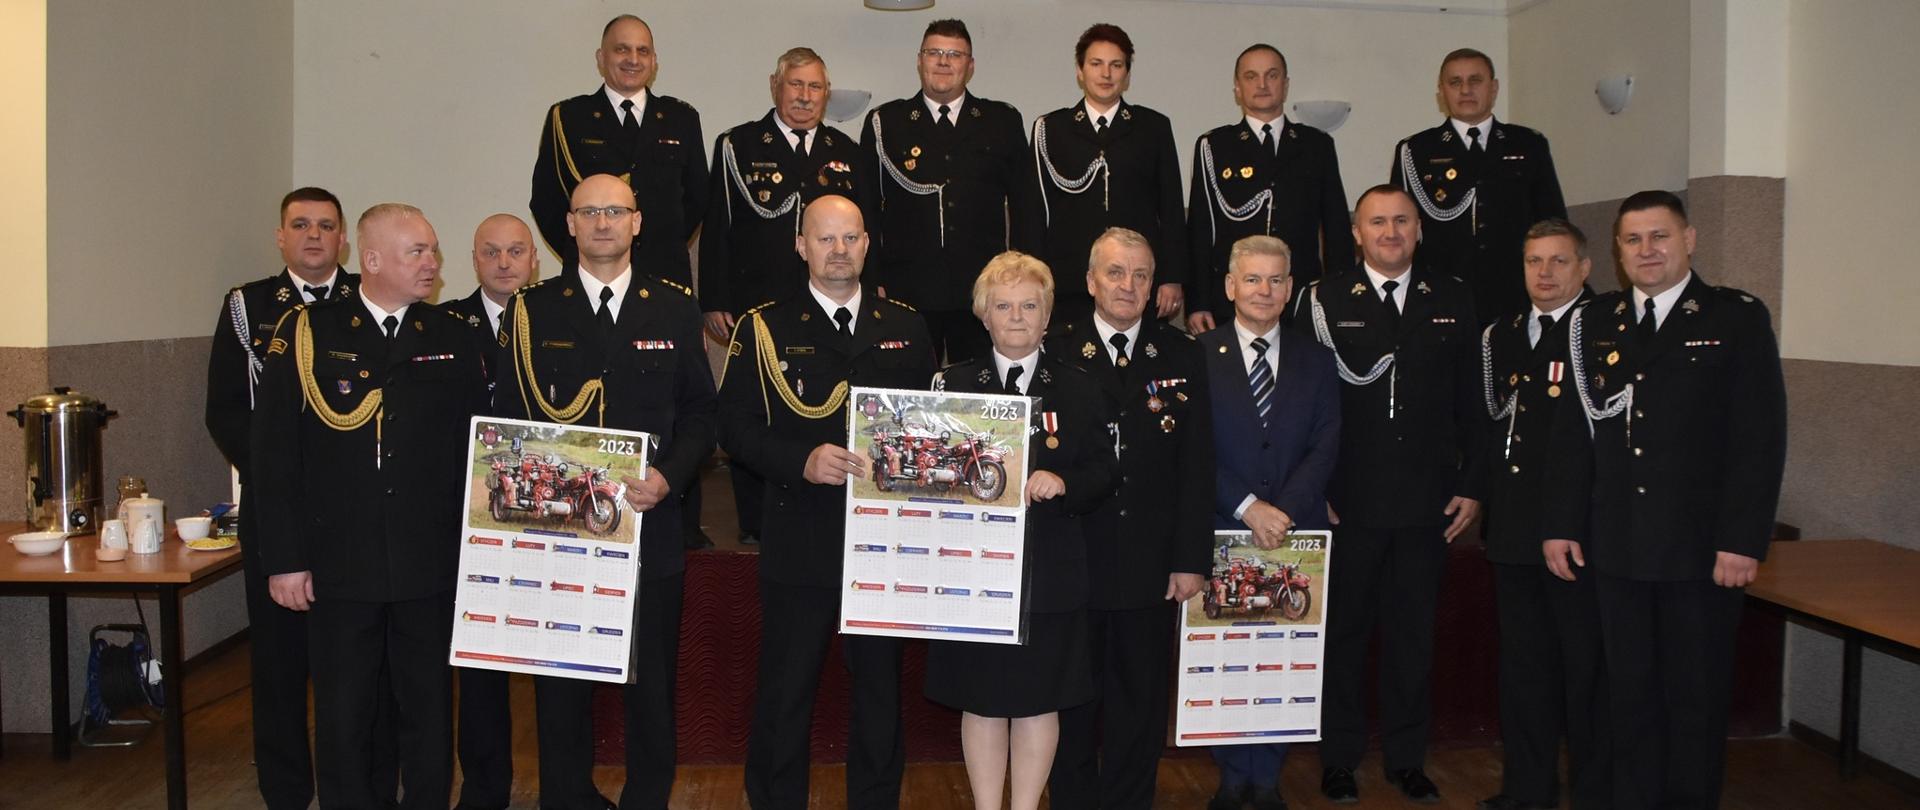 Zdjęcie grupowe osób uczestniczących w spotkaniu wigilijnym Zarządu Oddziału Powiatowego Związku Ochotniczych Straży Pożarnych w Żyrardowie.